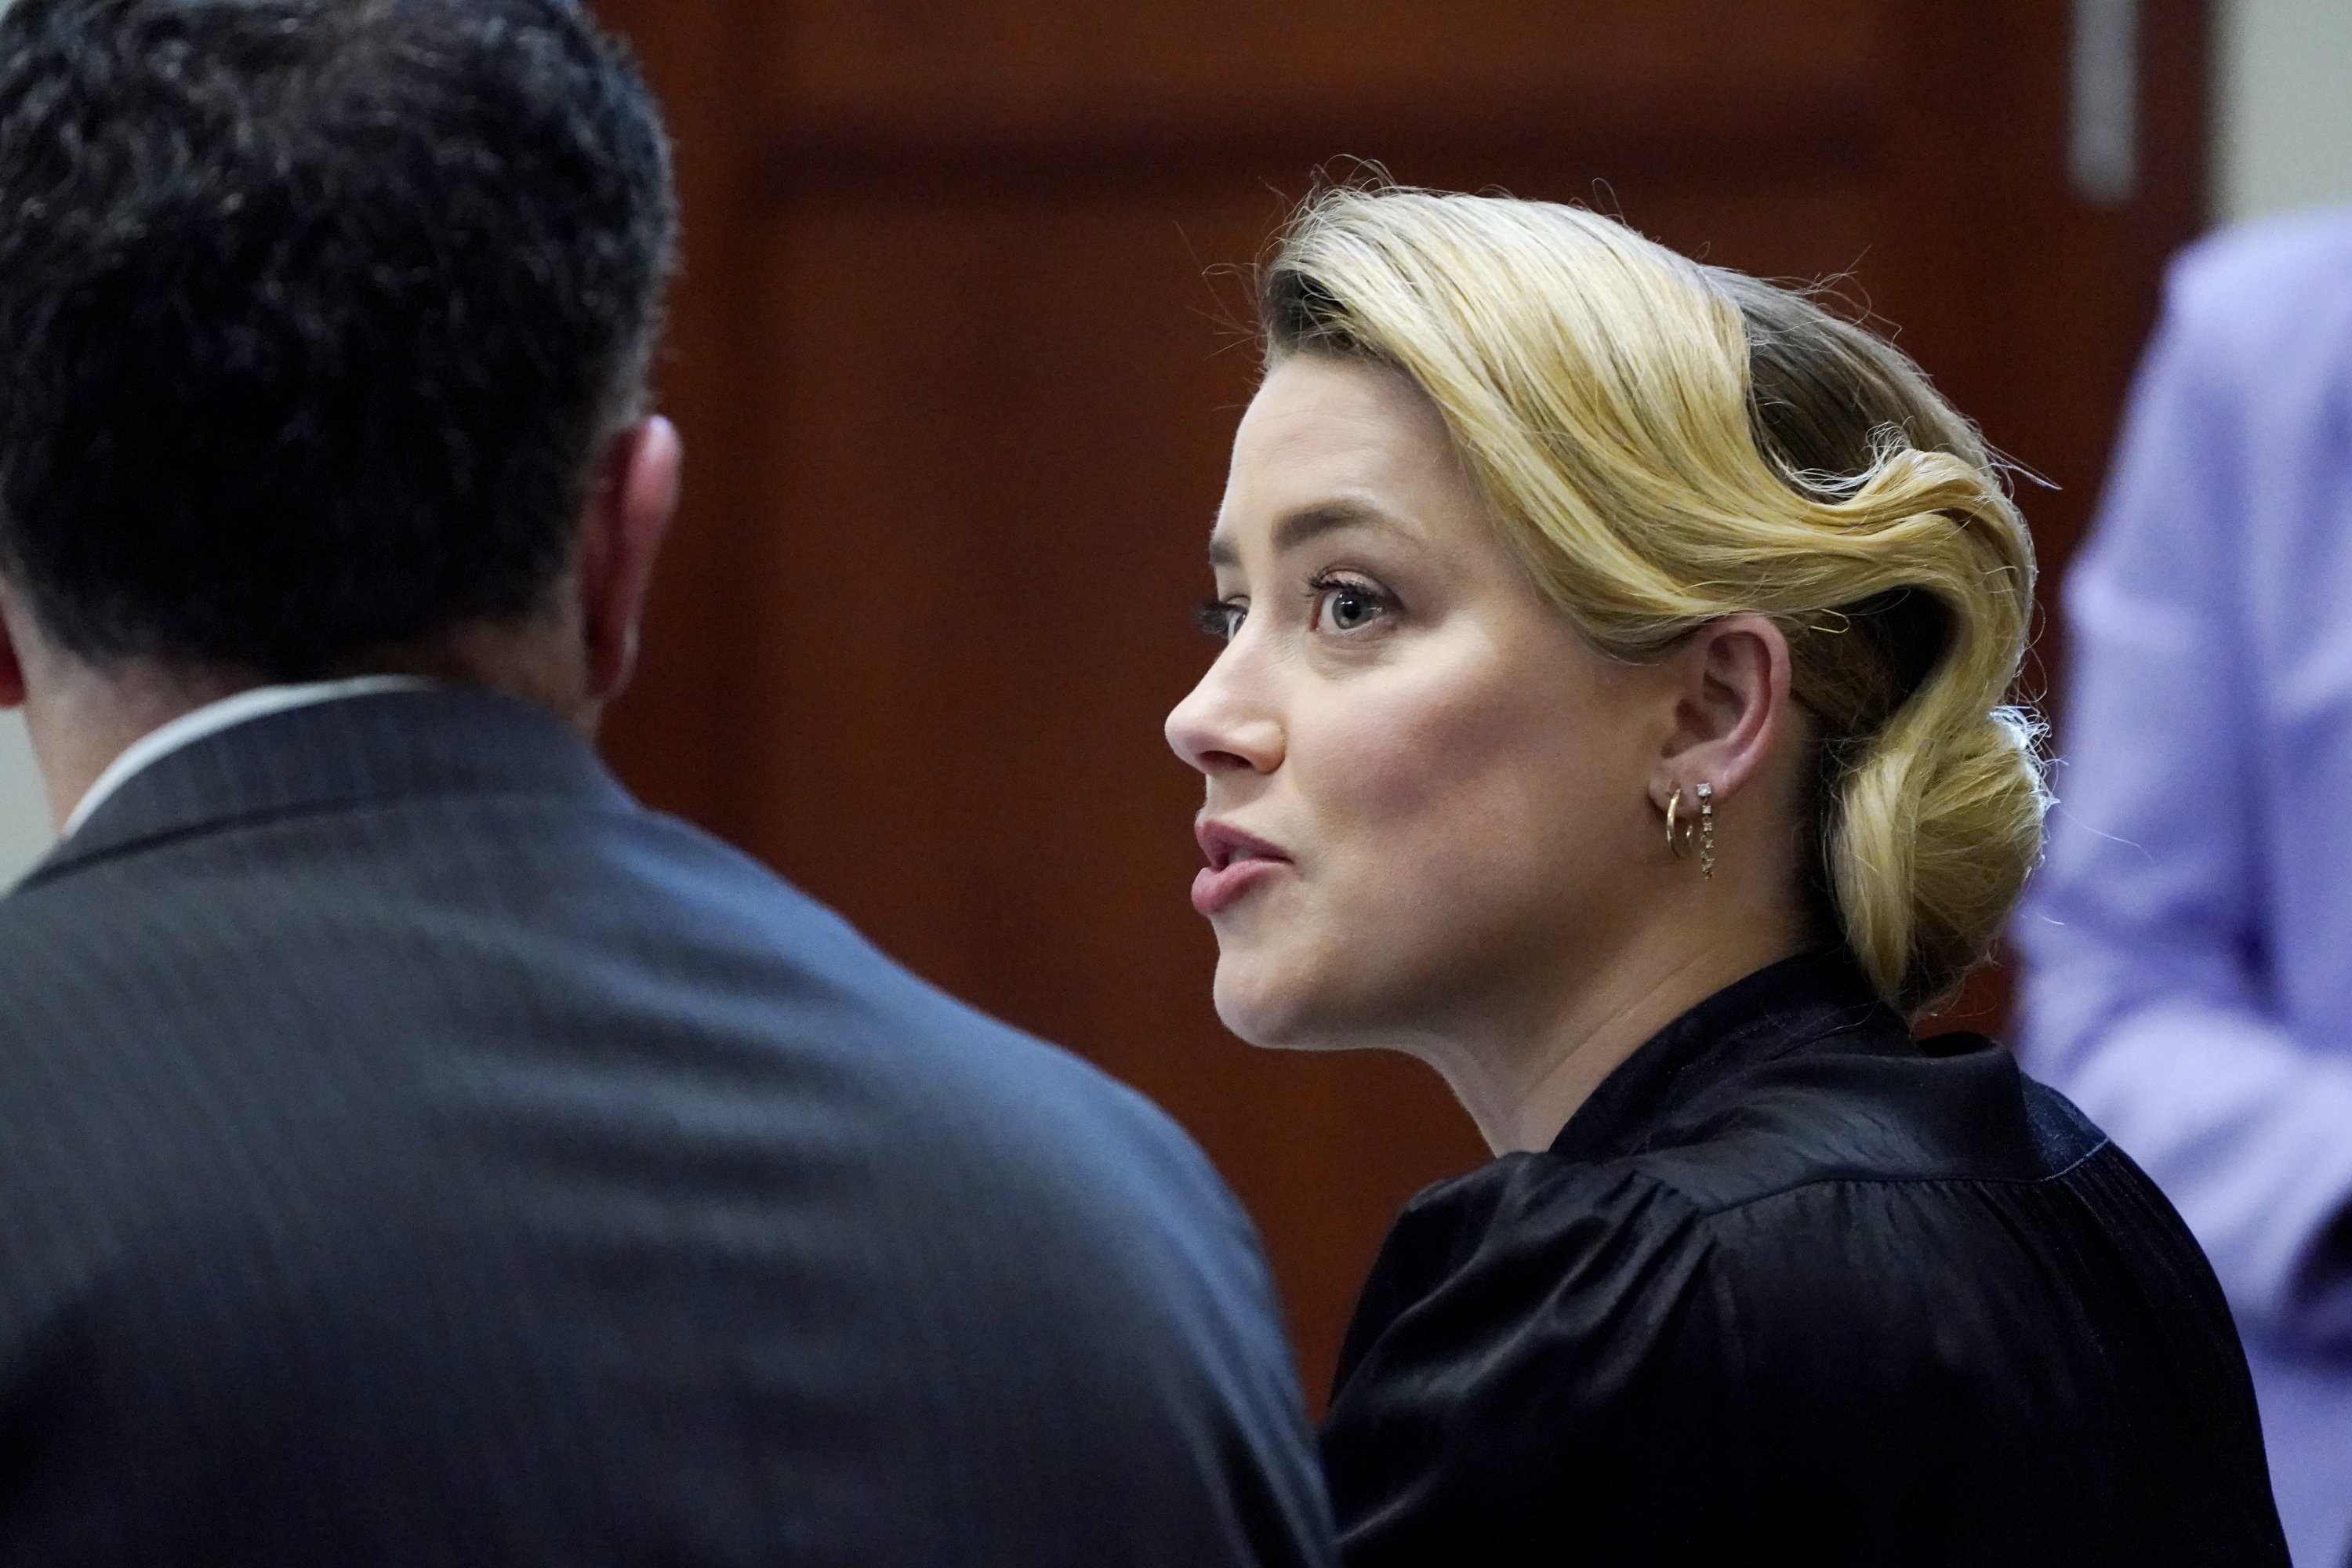 Schauspielerin Amber Heard spricht mit ihrem Anwalt im Gerichtssaal des Fairfax County Circuit Courthouse in Fairfax, Virginia, Montag, 25. April 2022. (AP)